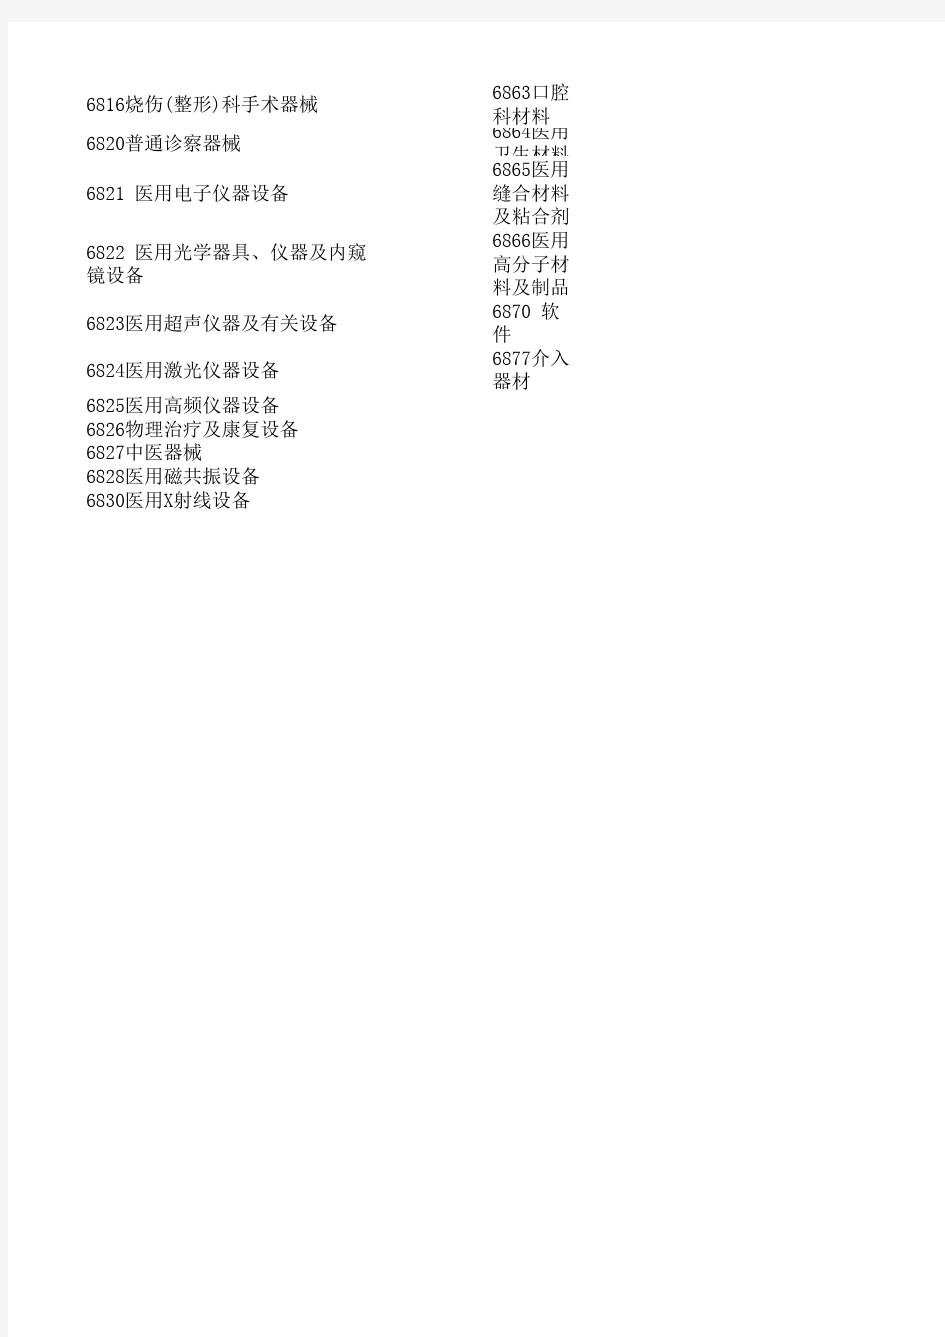 中国医疗器械产品分类目录_大类清单